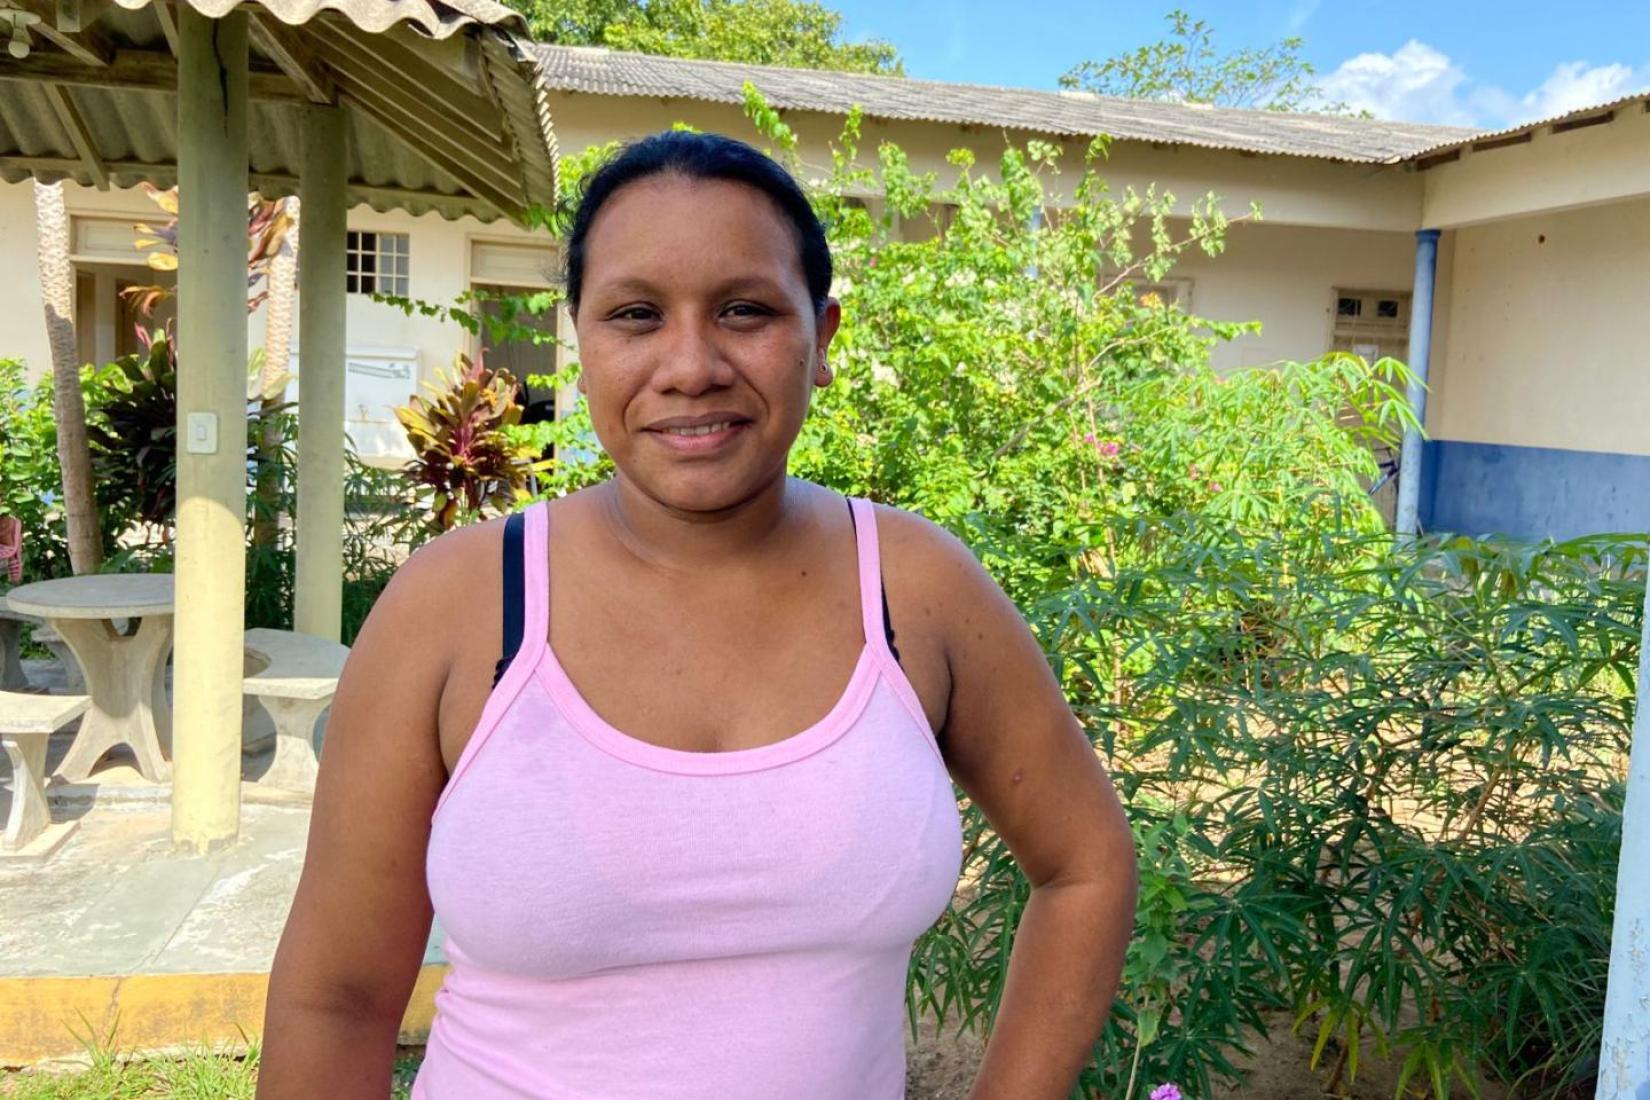 Com cinco filhos, Sandriele se divide entre a rotina atarefada de agente indígena de saúde e mãe de família.